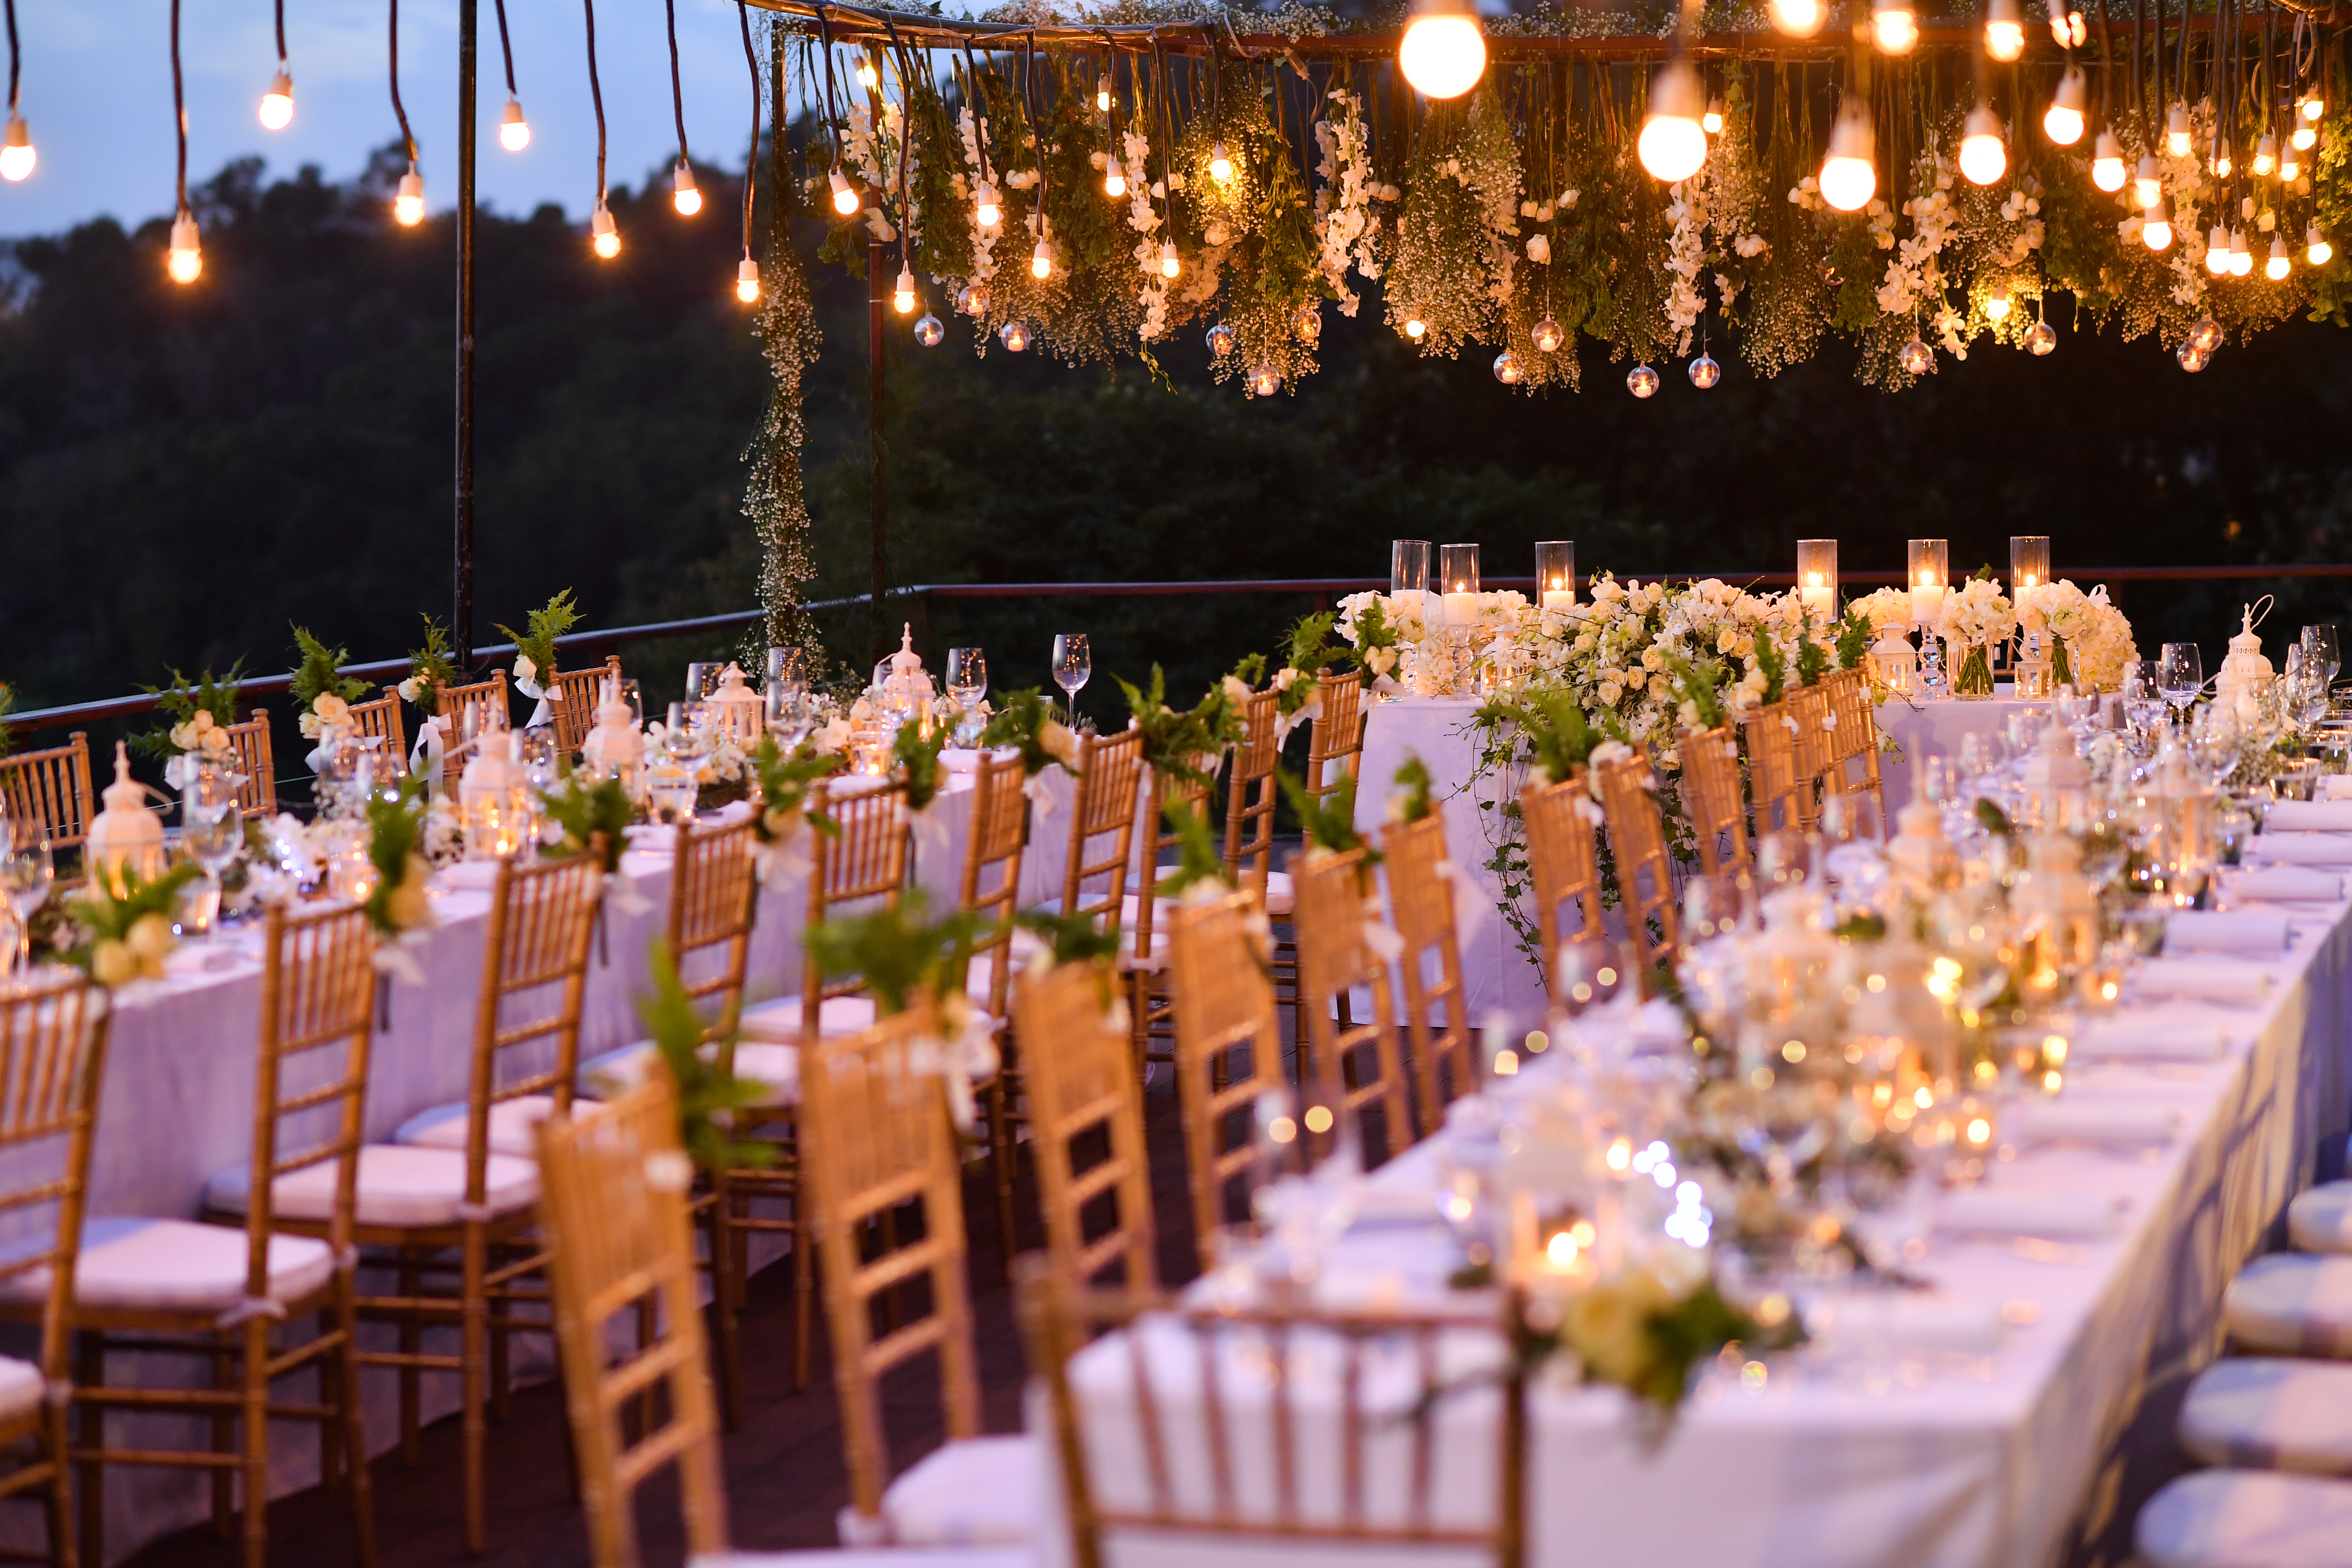 Ein Bild von einer schön dekorierten Hochzeitsfeier | Quelle: Shutterstock